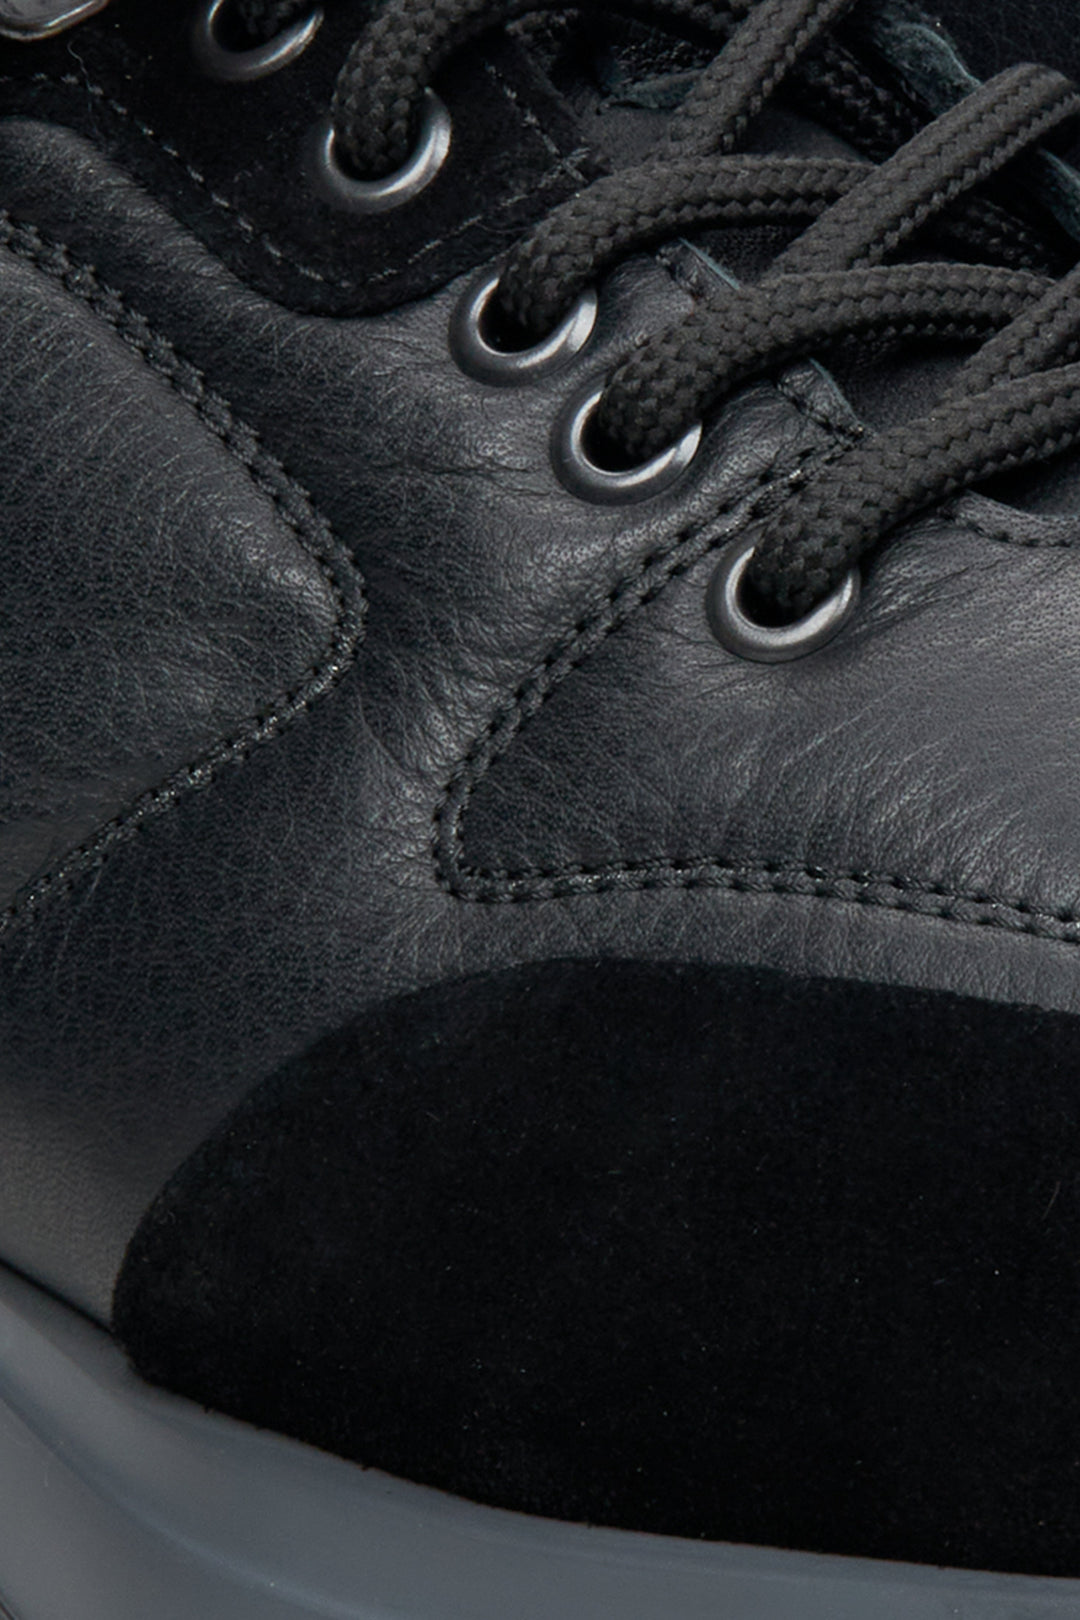 Niskie sneakersy męskie o sportowym kroju w kolorze czarnym z zamszu i skóry Estro - zbliżenie na detale.